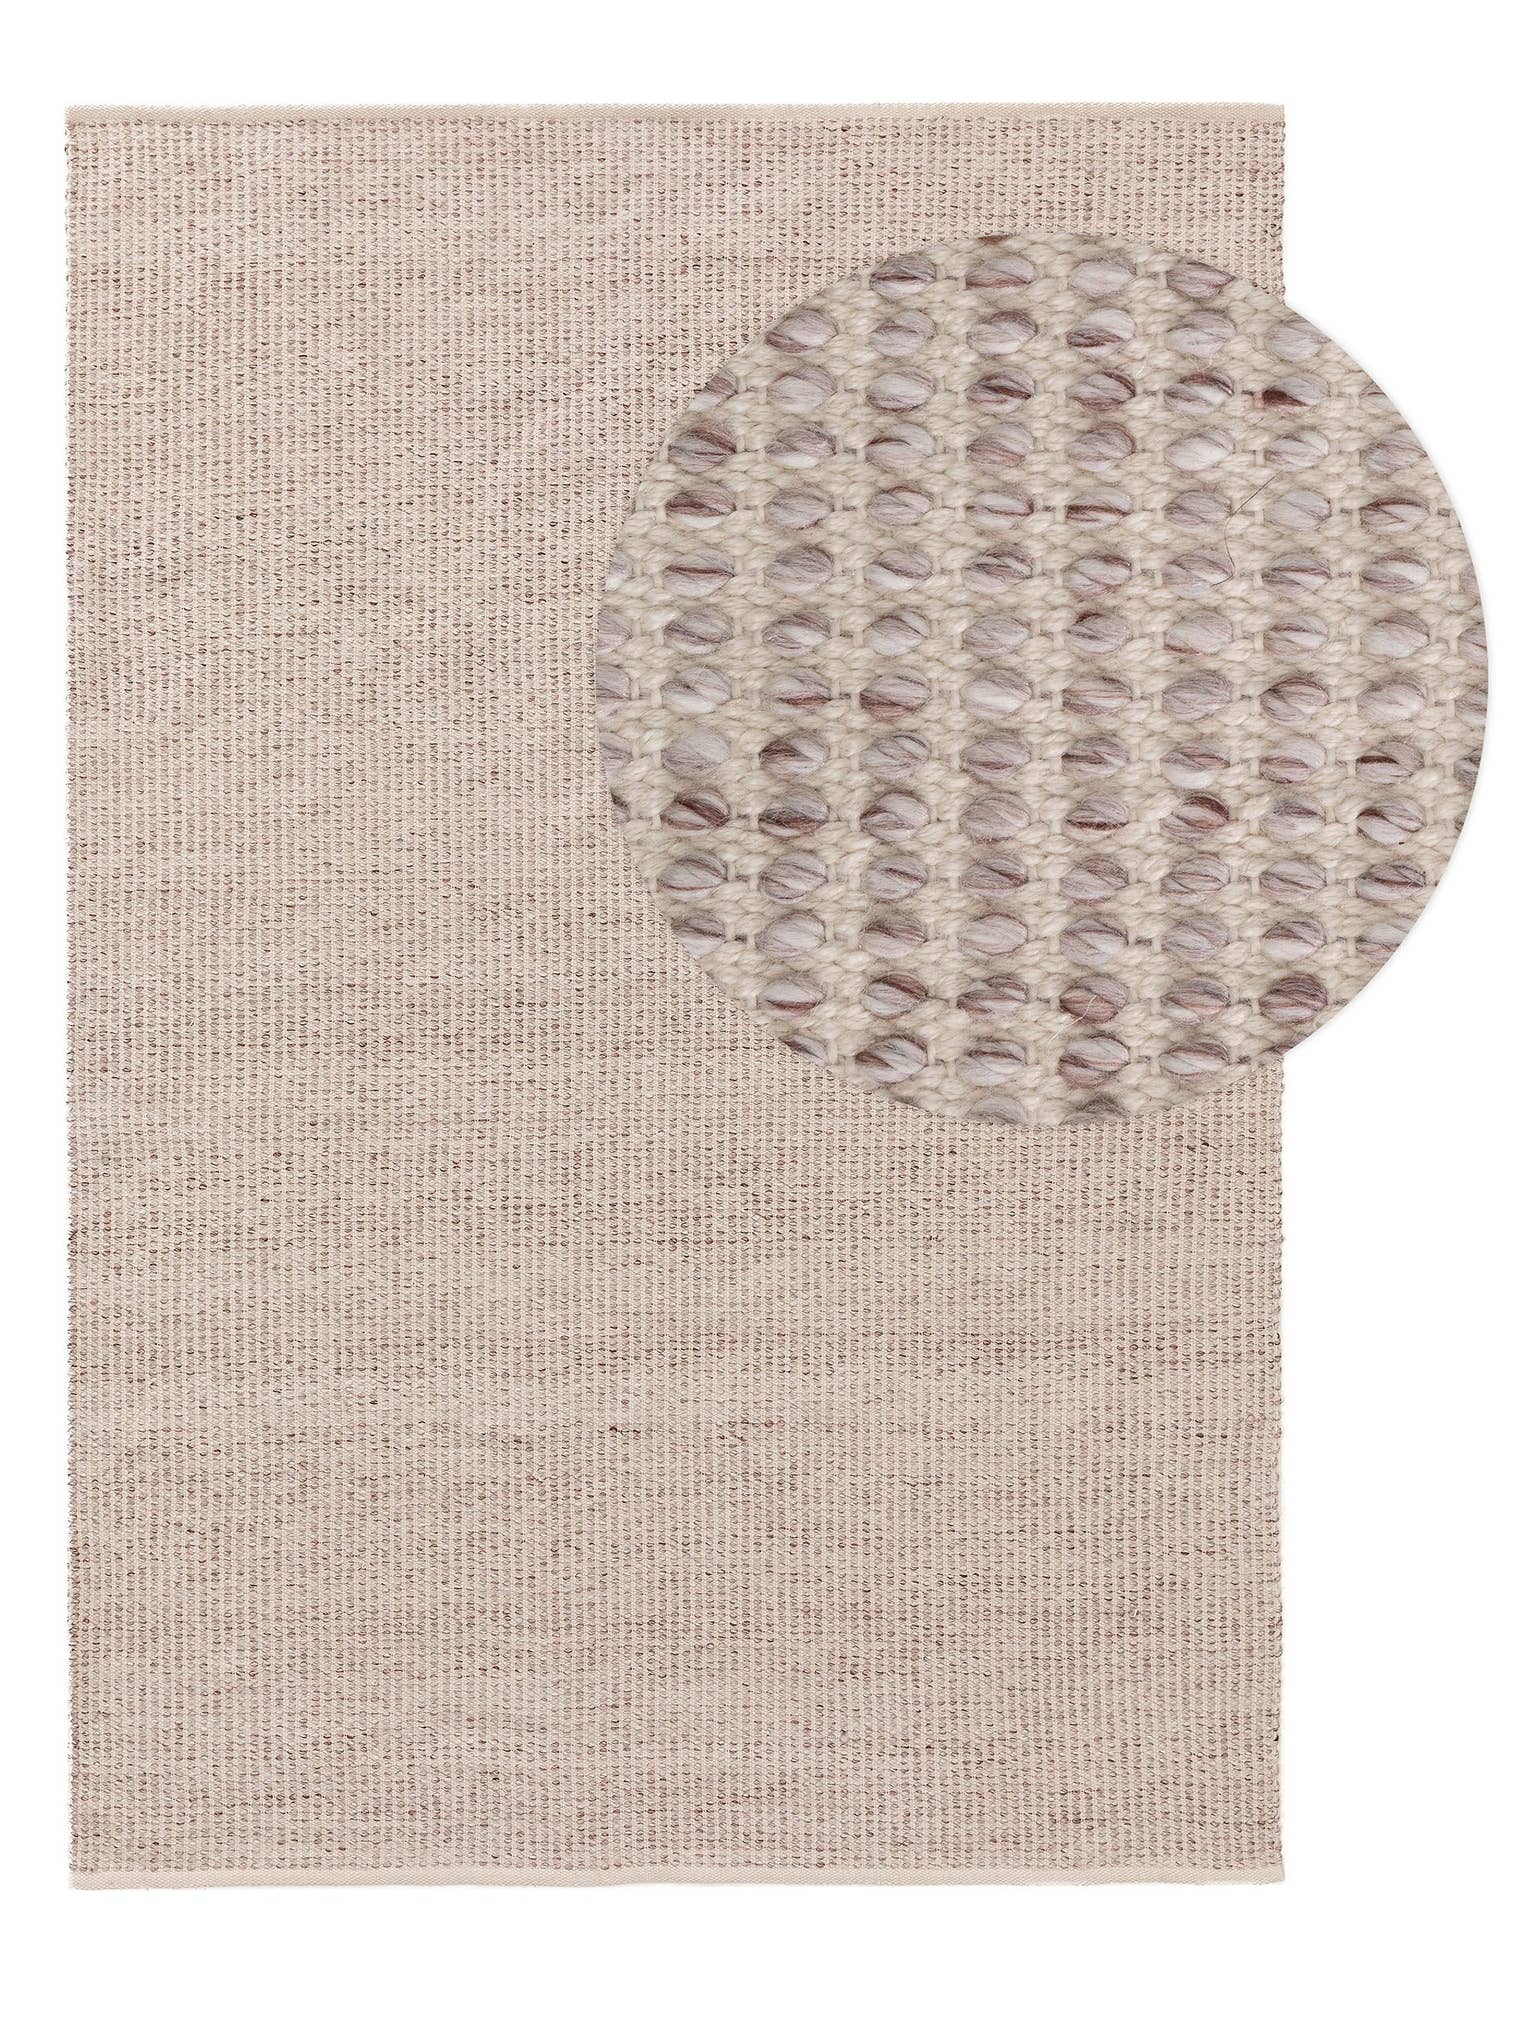 Matta av 100% Polyester i Beige med 1- 5 mm hög lugg från benuta Pure